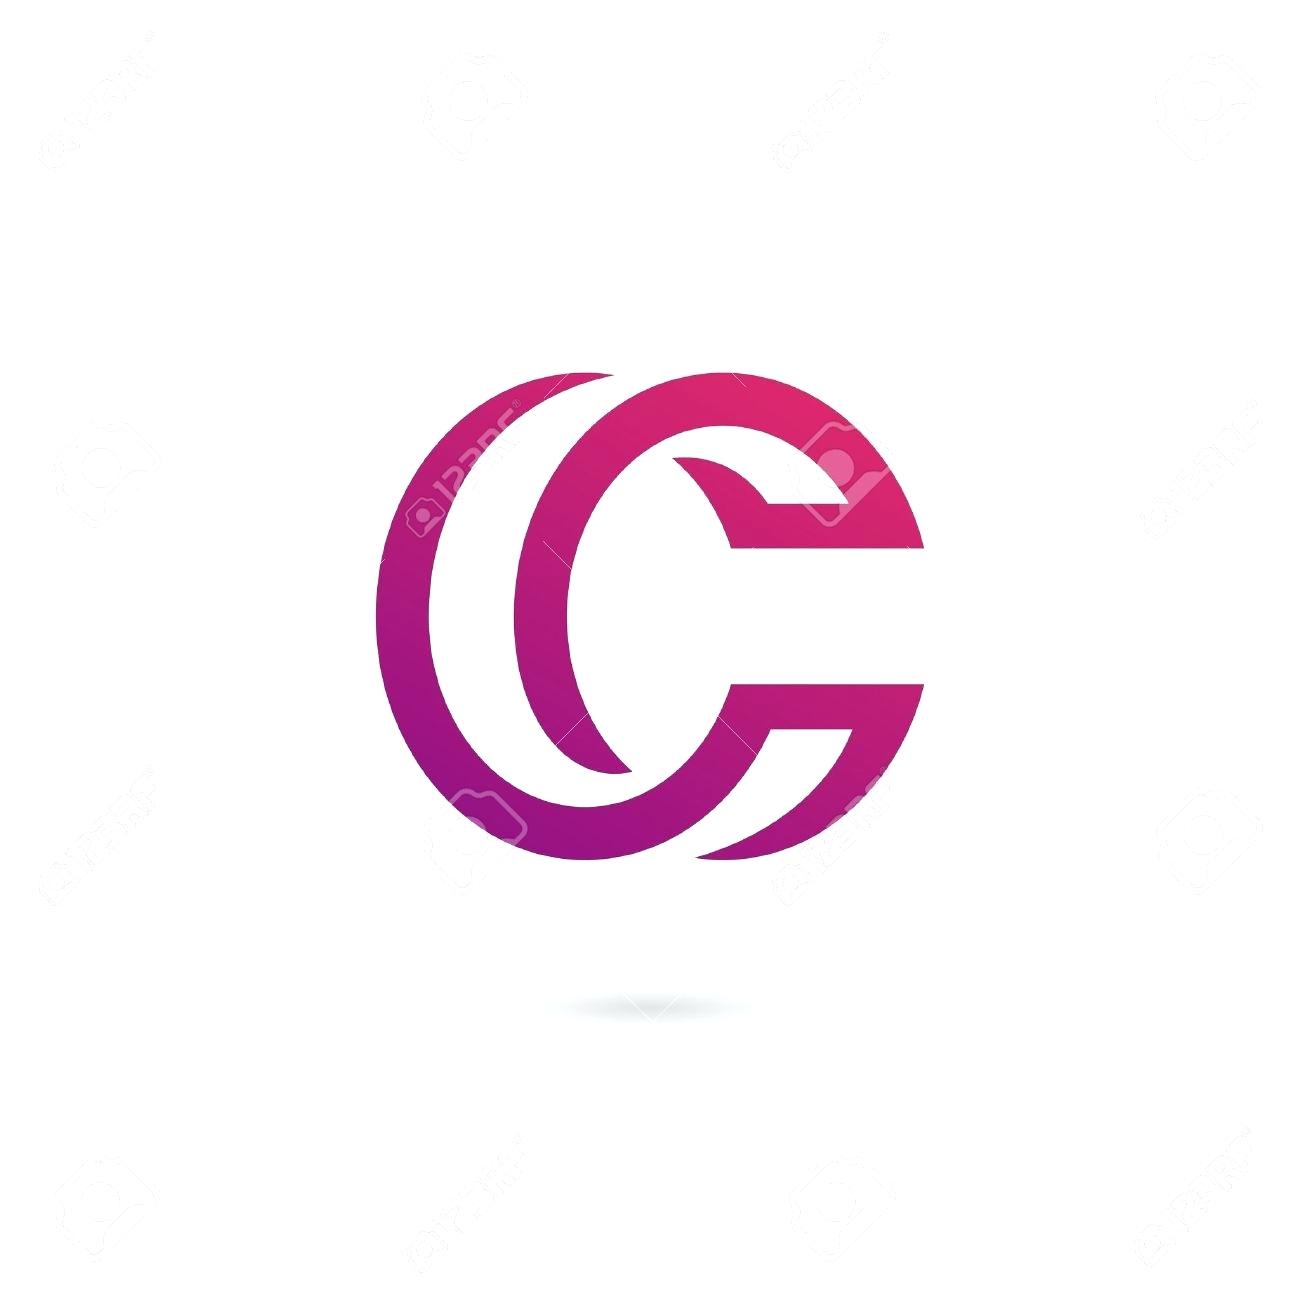 U Letter C Logo - Letter C Image M Letter Image In Heart